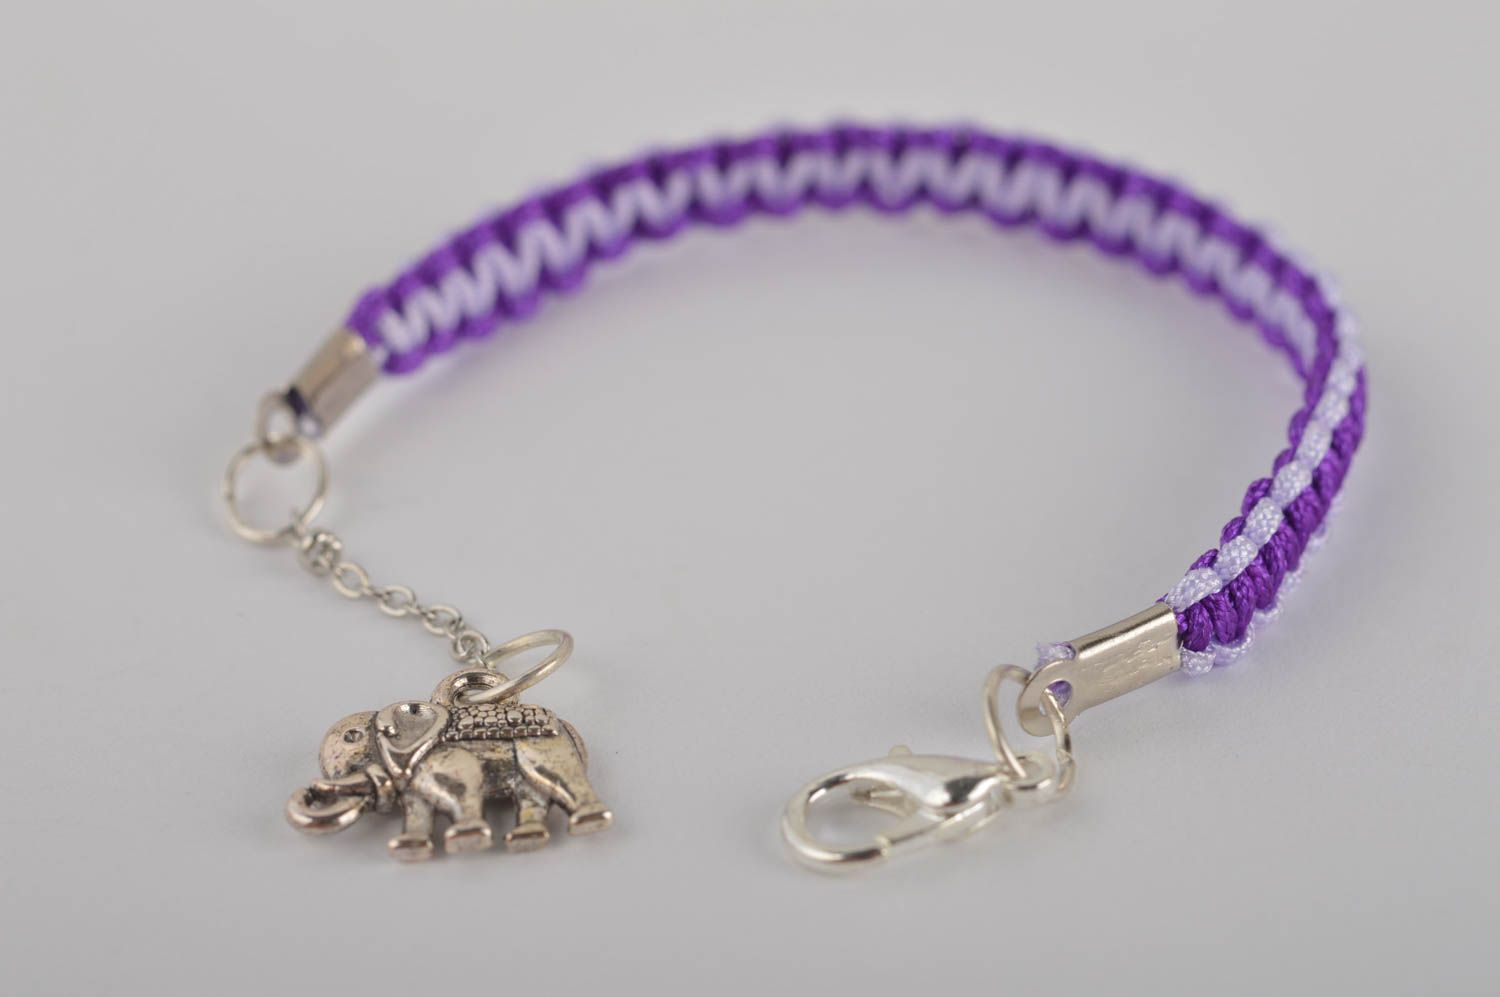 Handmade Textil Armband in Violett Designer Schmuck Accessoire für Mädchen foto 3